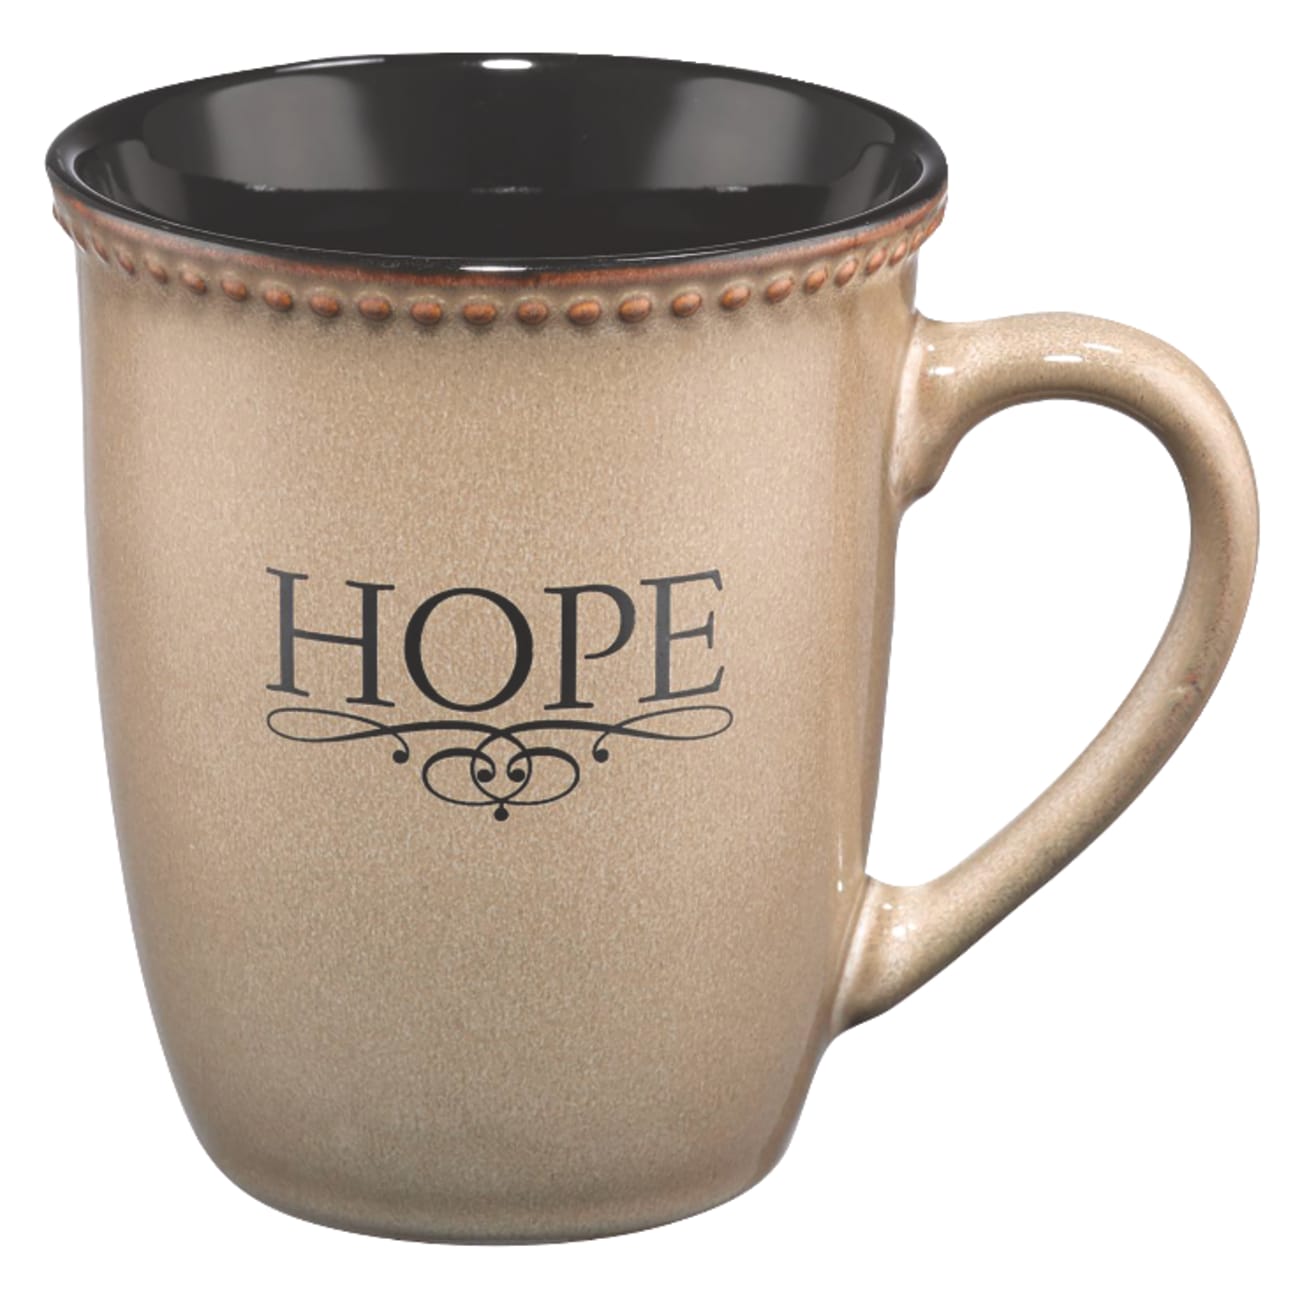 Mug Rimmed Glazed: Hope, Ivory (Hebrews 6:19) (384ml) Homeware